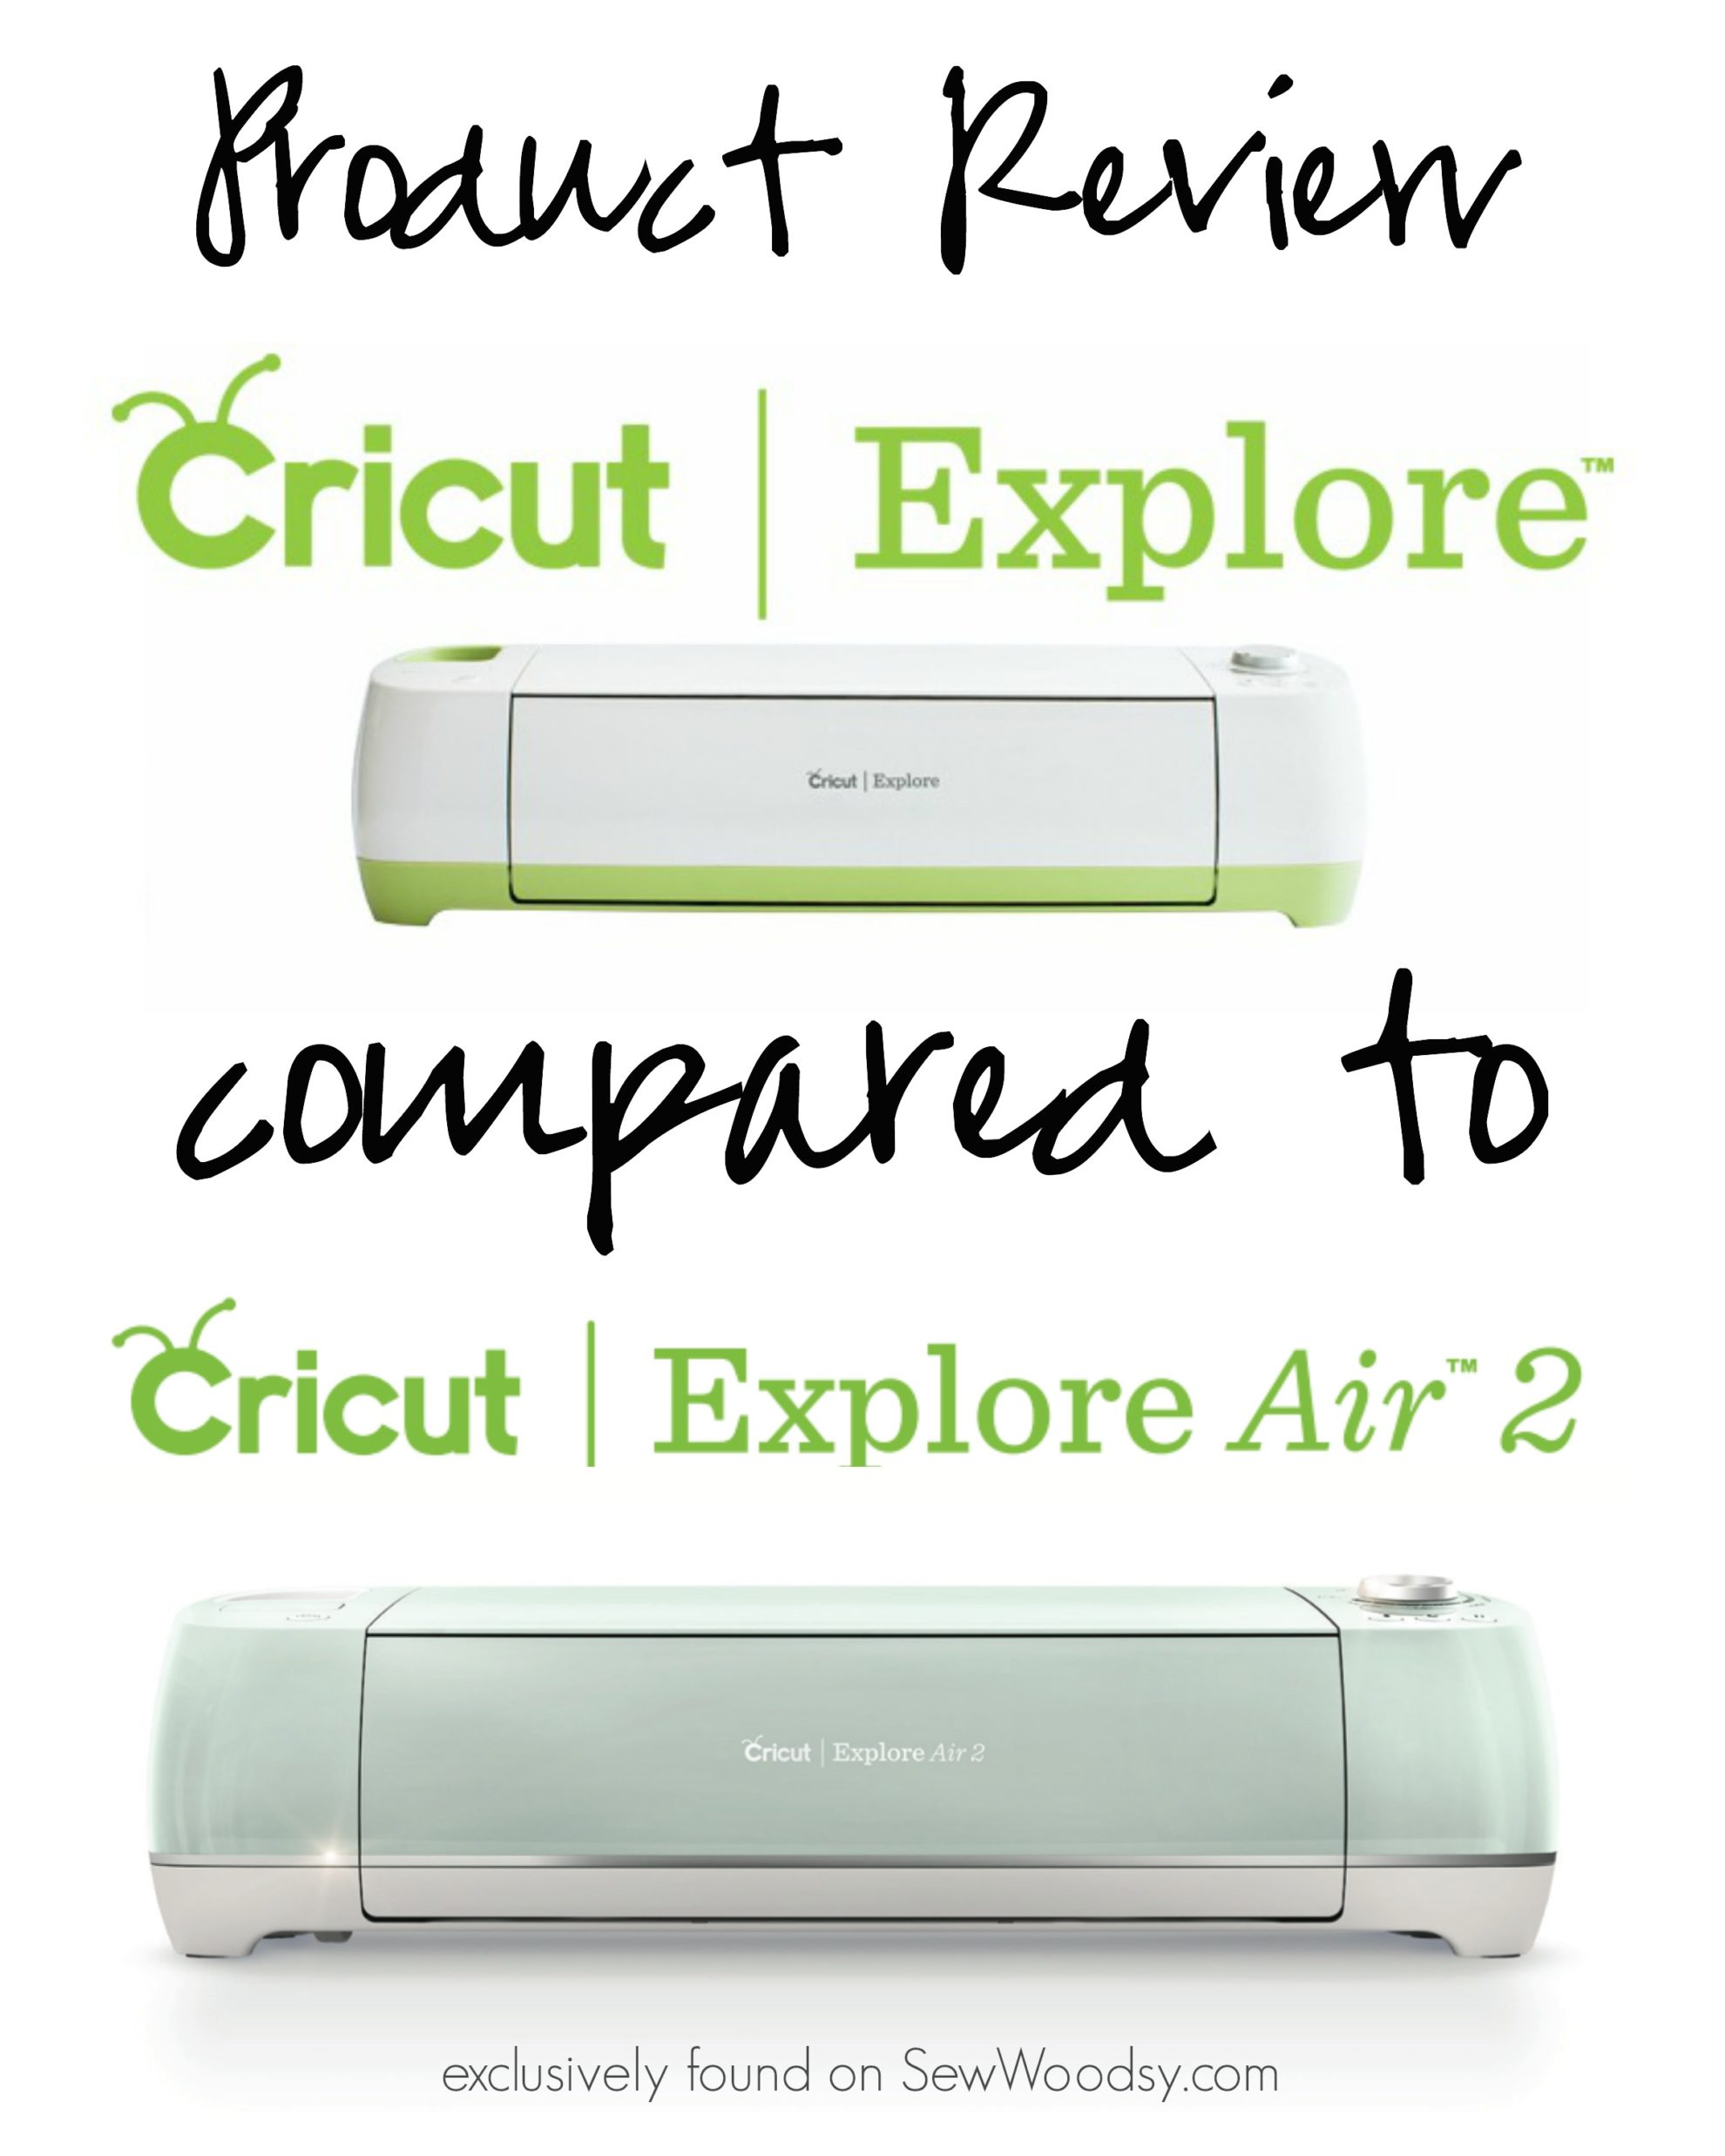 Review} Cricut Explore vs Circut Explore Air 2 - Sew Woodsy